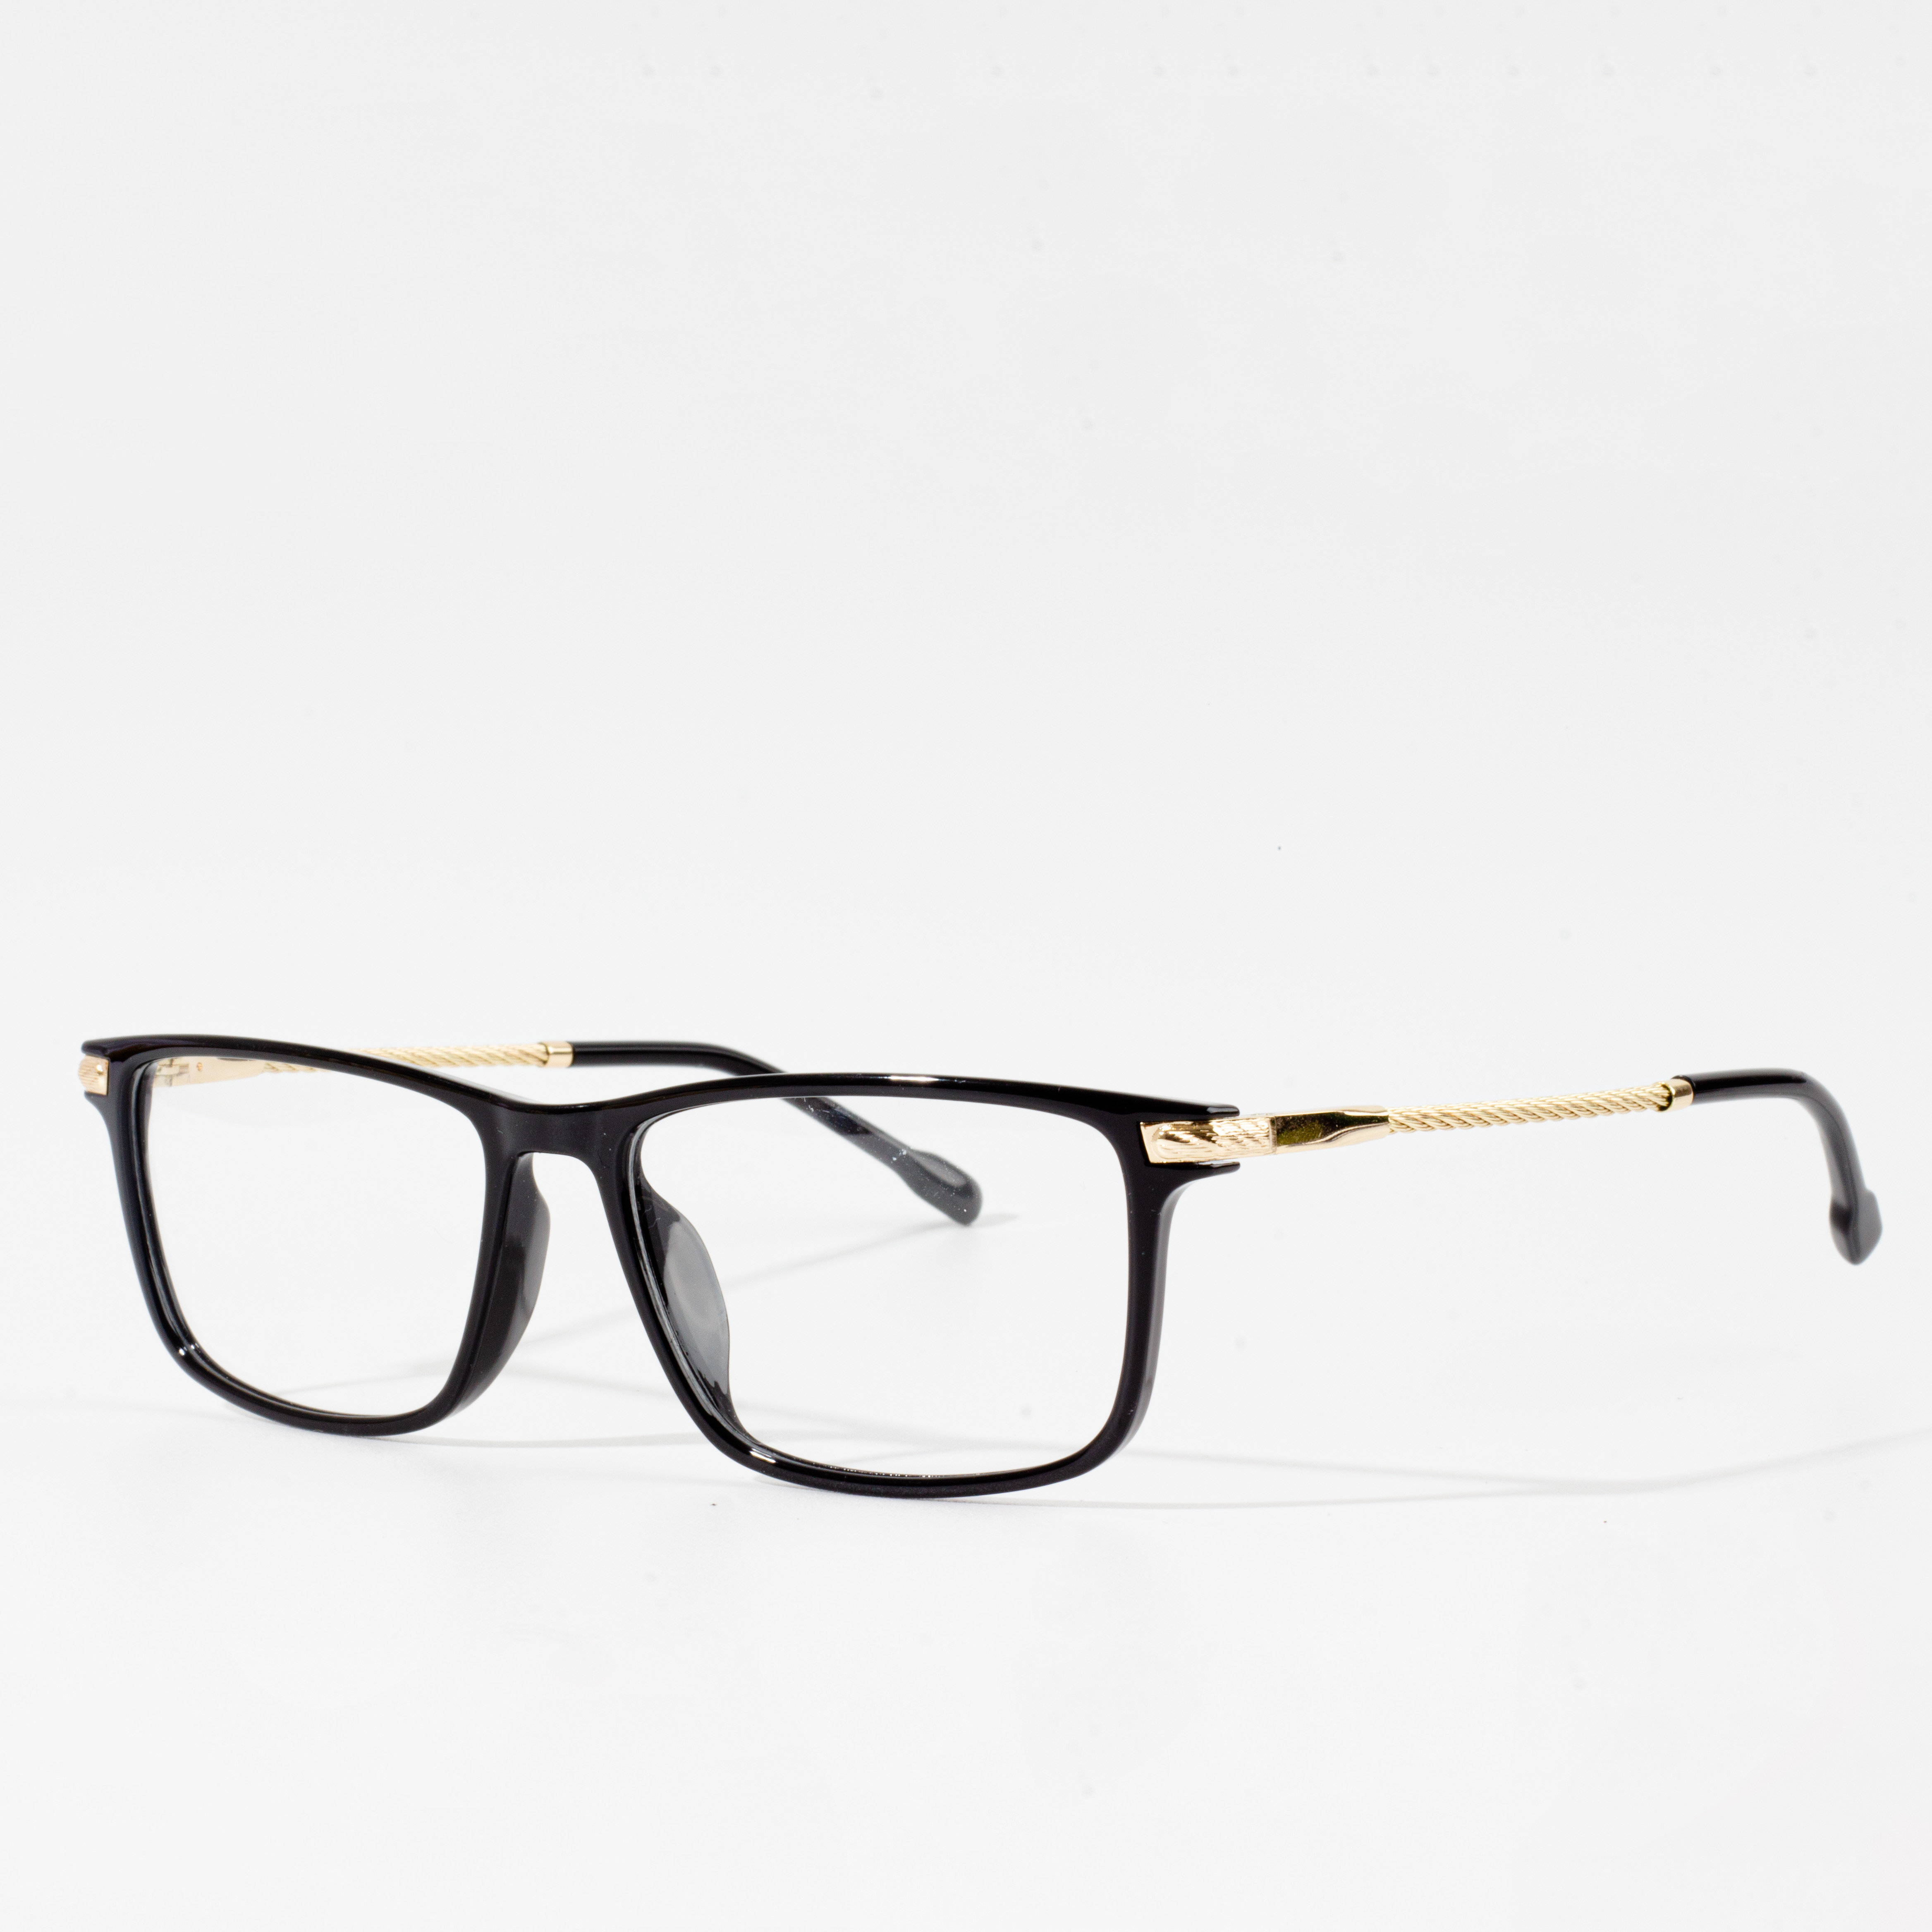 Eyeglasses frame